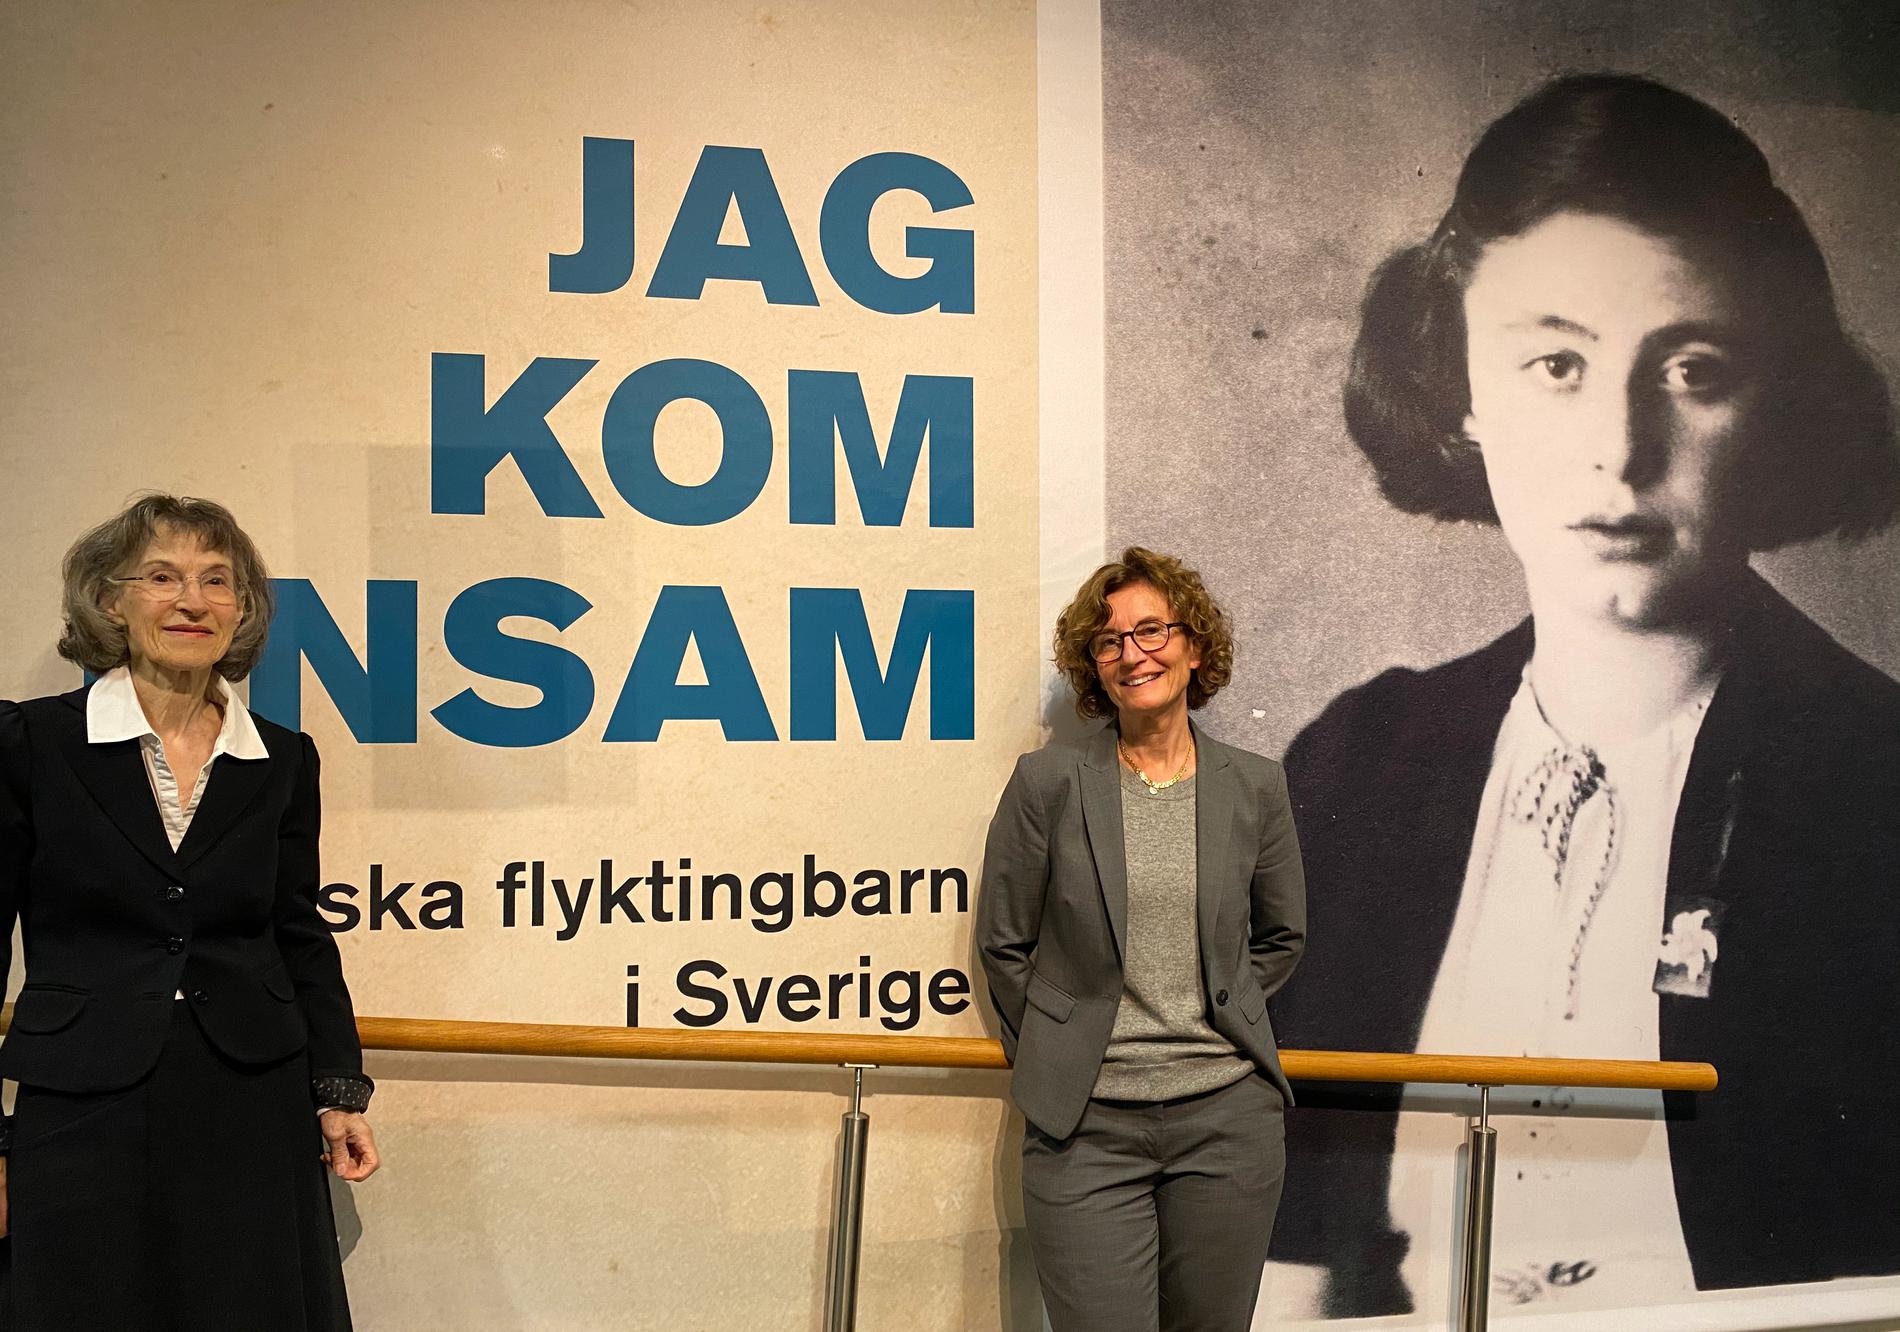 Eva Lecerof och Ingrid Lomfors vid utställningen ”Jag kom ensam”. Ingrid Lomfors mamma Penina, som kom ensam till Sverige som 13-åring, syns på den svartvita bilden till höger.